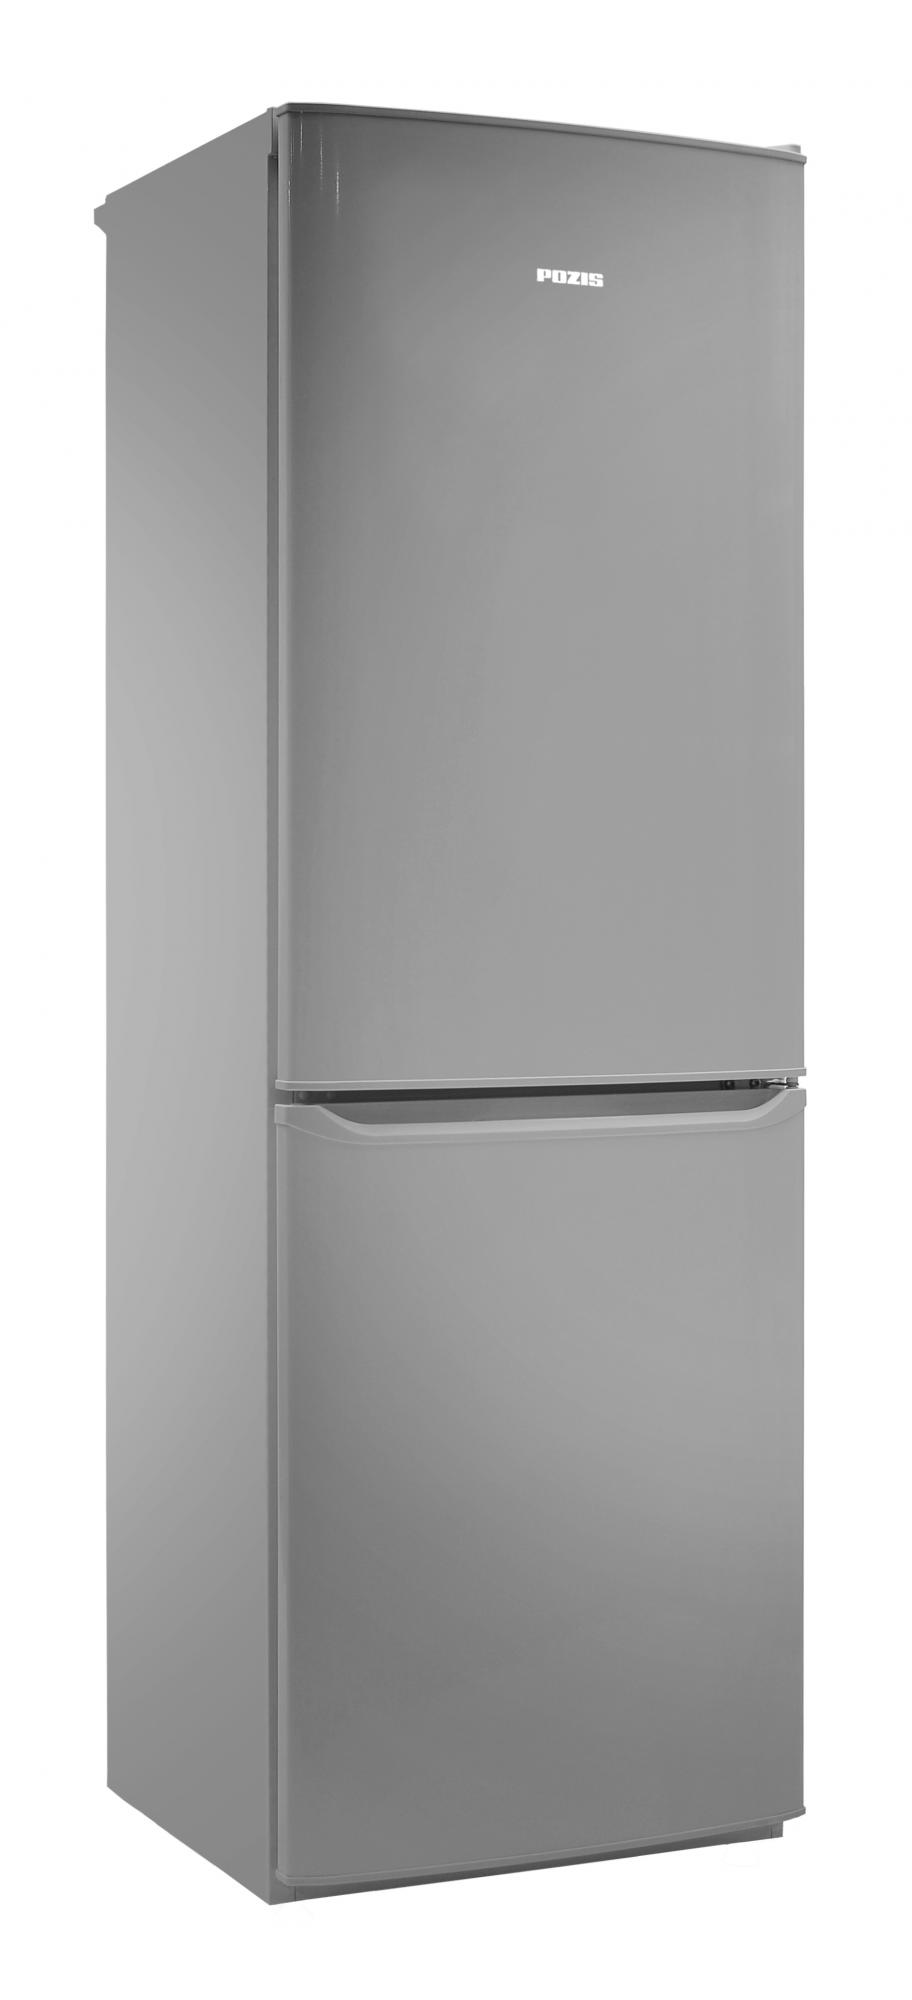 Холодильник POZIS RK - 139 A серебристый																		 — описание, фото, цены в интернет-магазине Премьер Техно